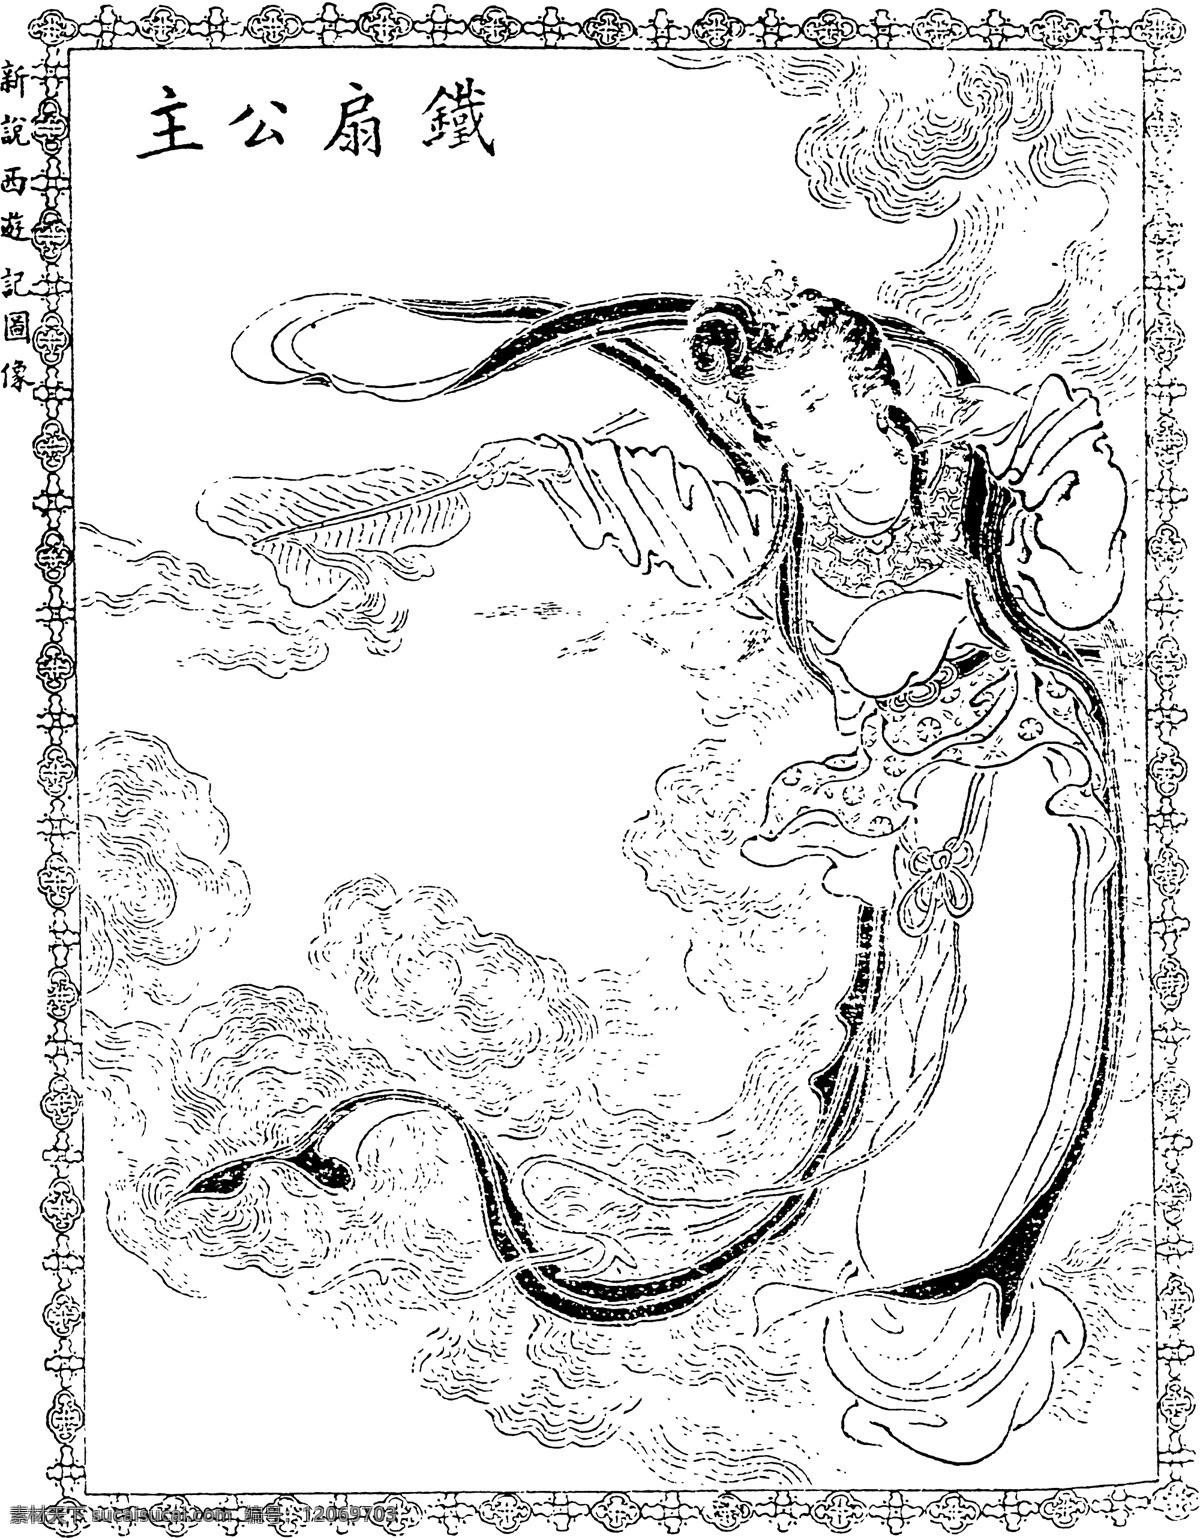 西游记 人物 铁 扇 公主 中国 古代 神话 铁扇公主 矢量人物 其他人物 矢量图库 矢量精品